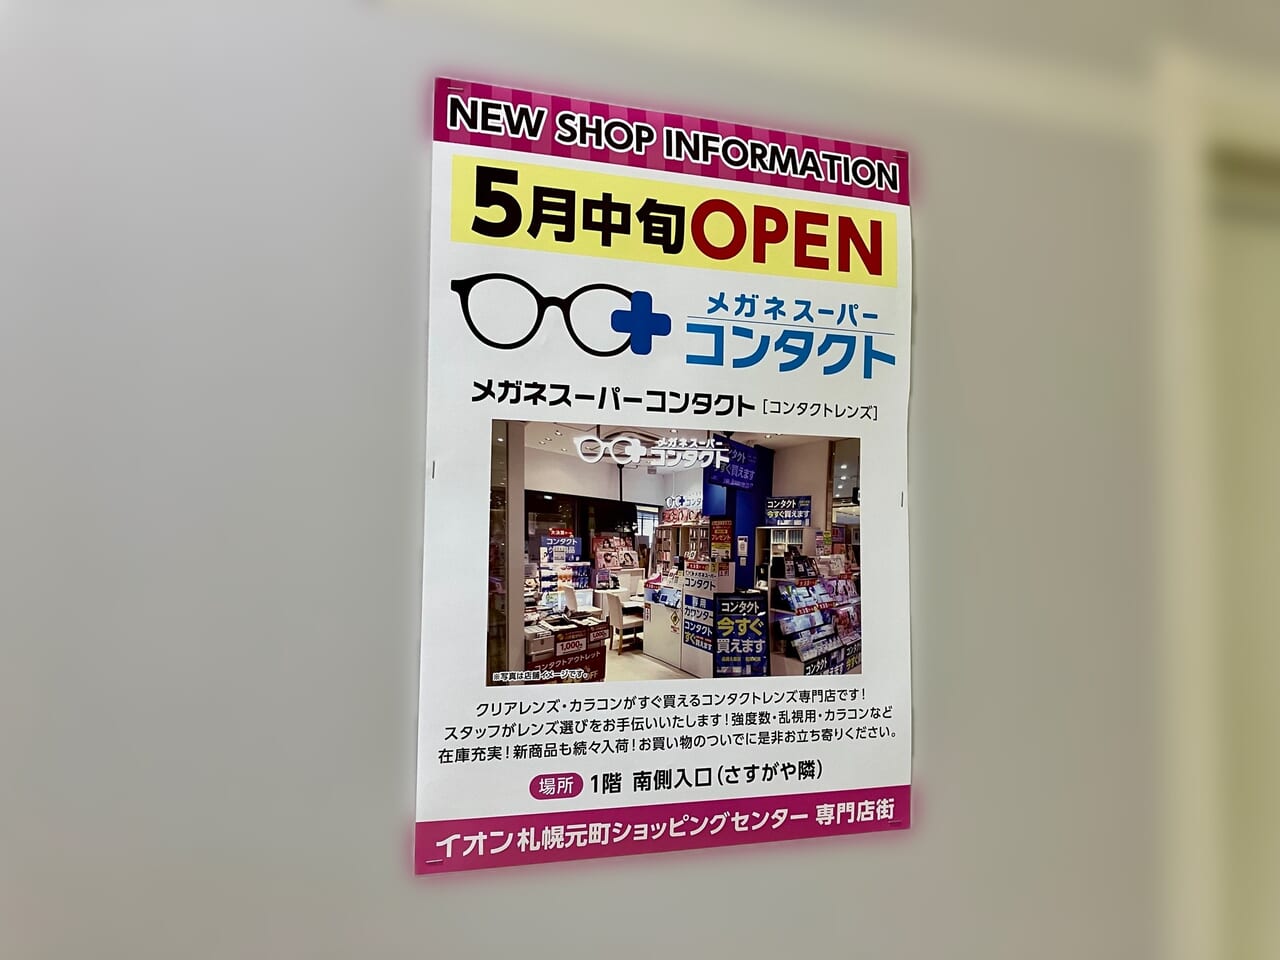 「イオン札幌元町ショッピングセンター」の新店情報。5月中旬にコンタクトレンズ専門店がオープン。